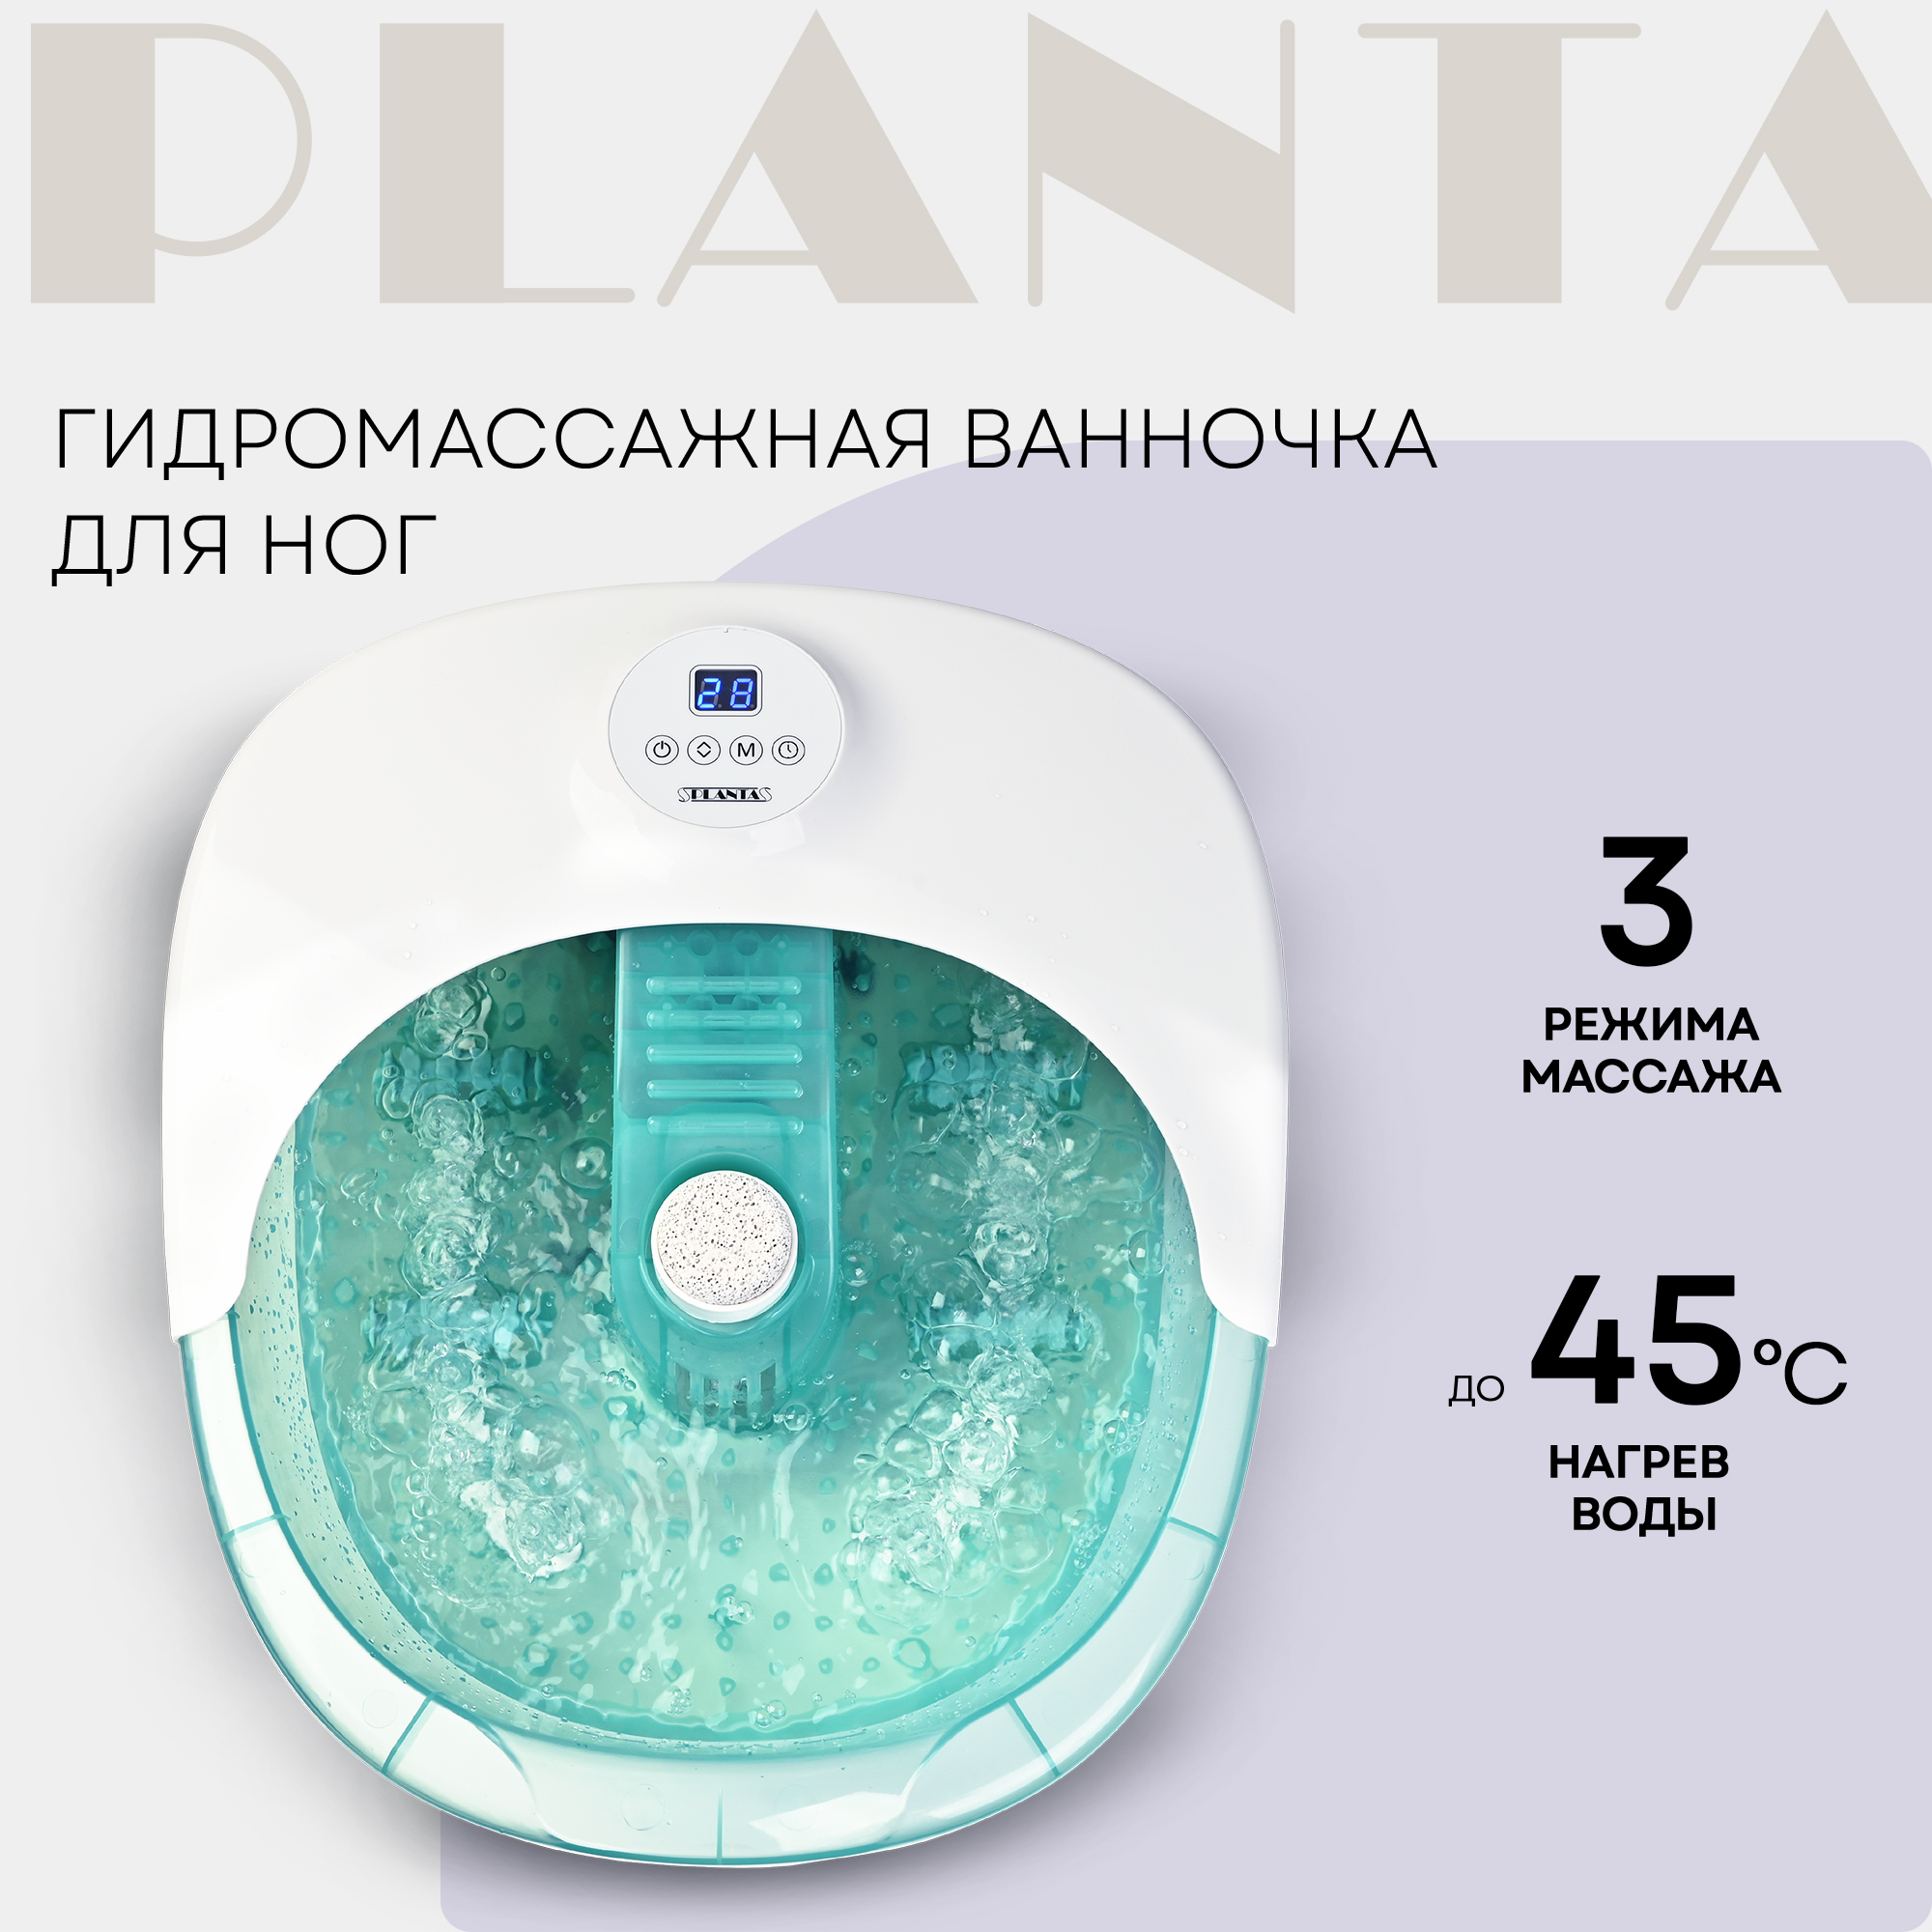 Гидромассажная ванночка для ног PLANTA MFS-400 белый-голубой